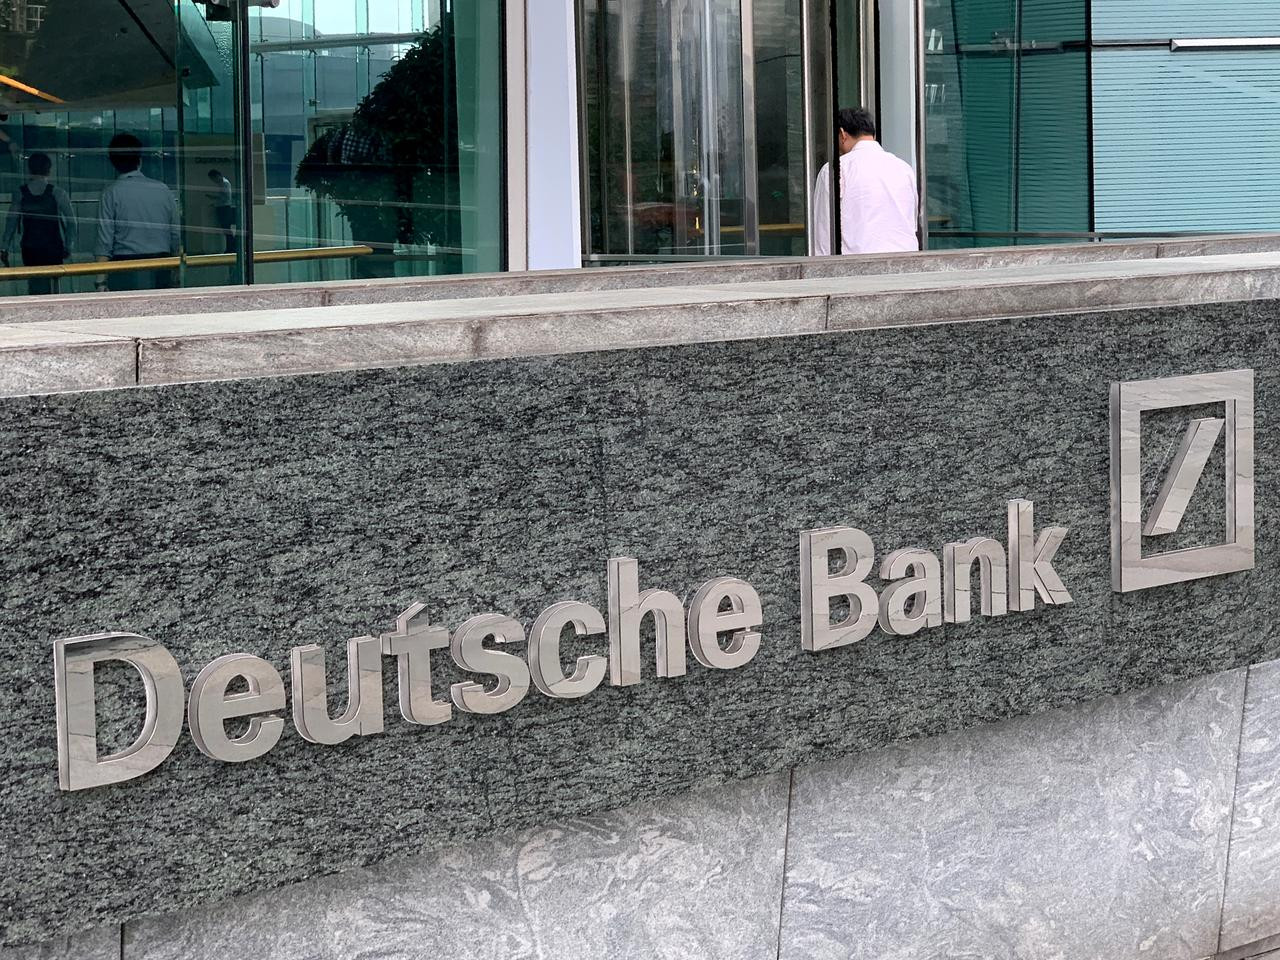 Deutsche Bank'tan 2007'den bu yana en yüksek net kar